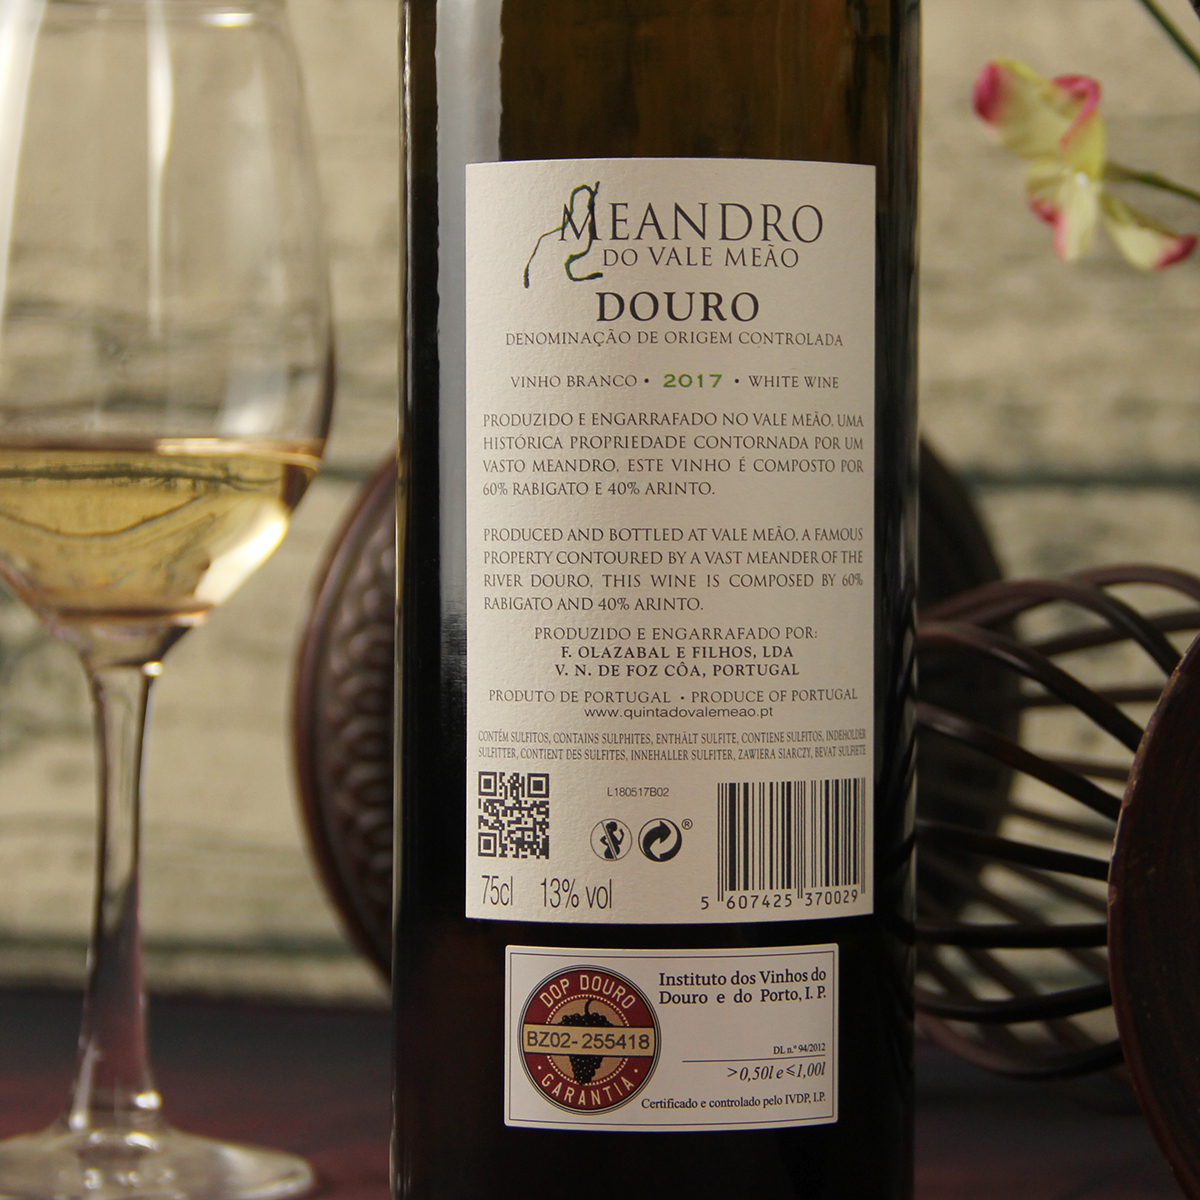 葡萄牙杜罗河华丽美奥酒庄雅菱度拉比加图混酿美安祖干白葡萄酒